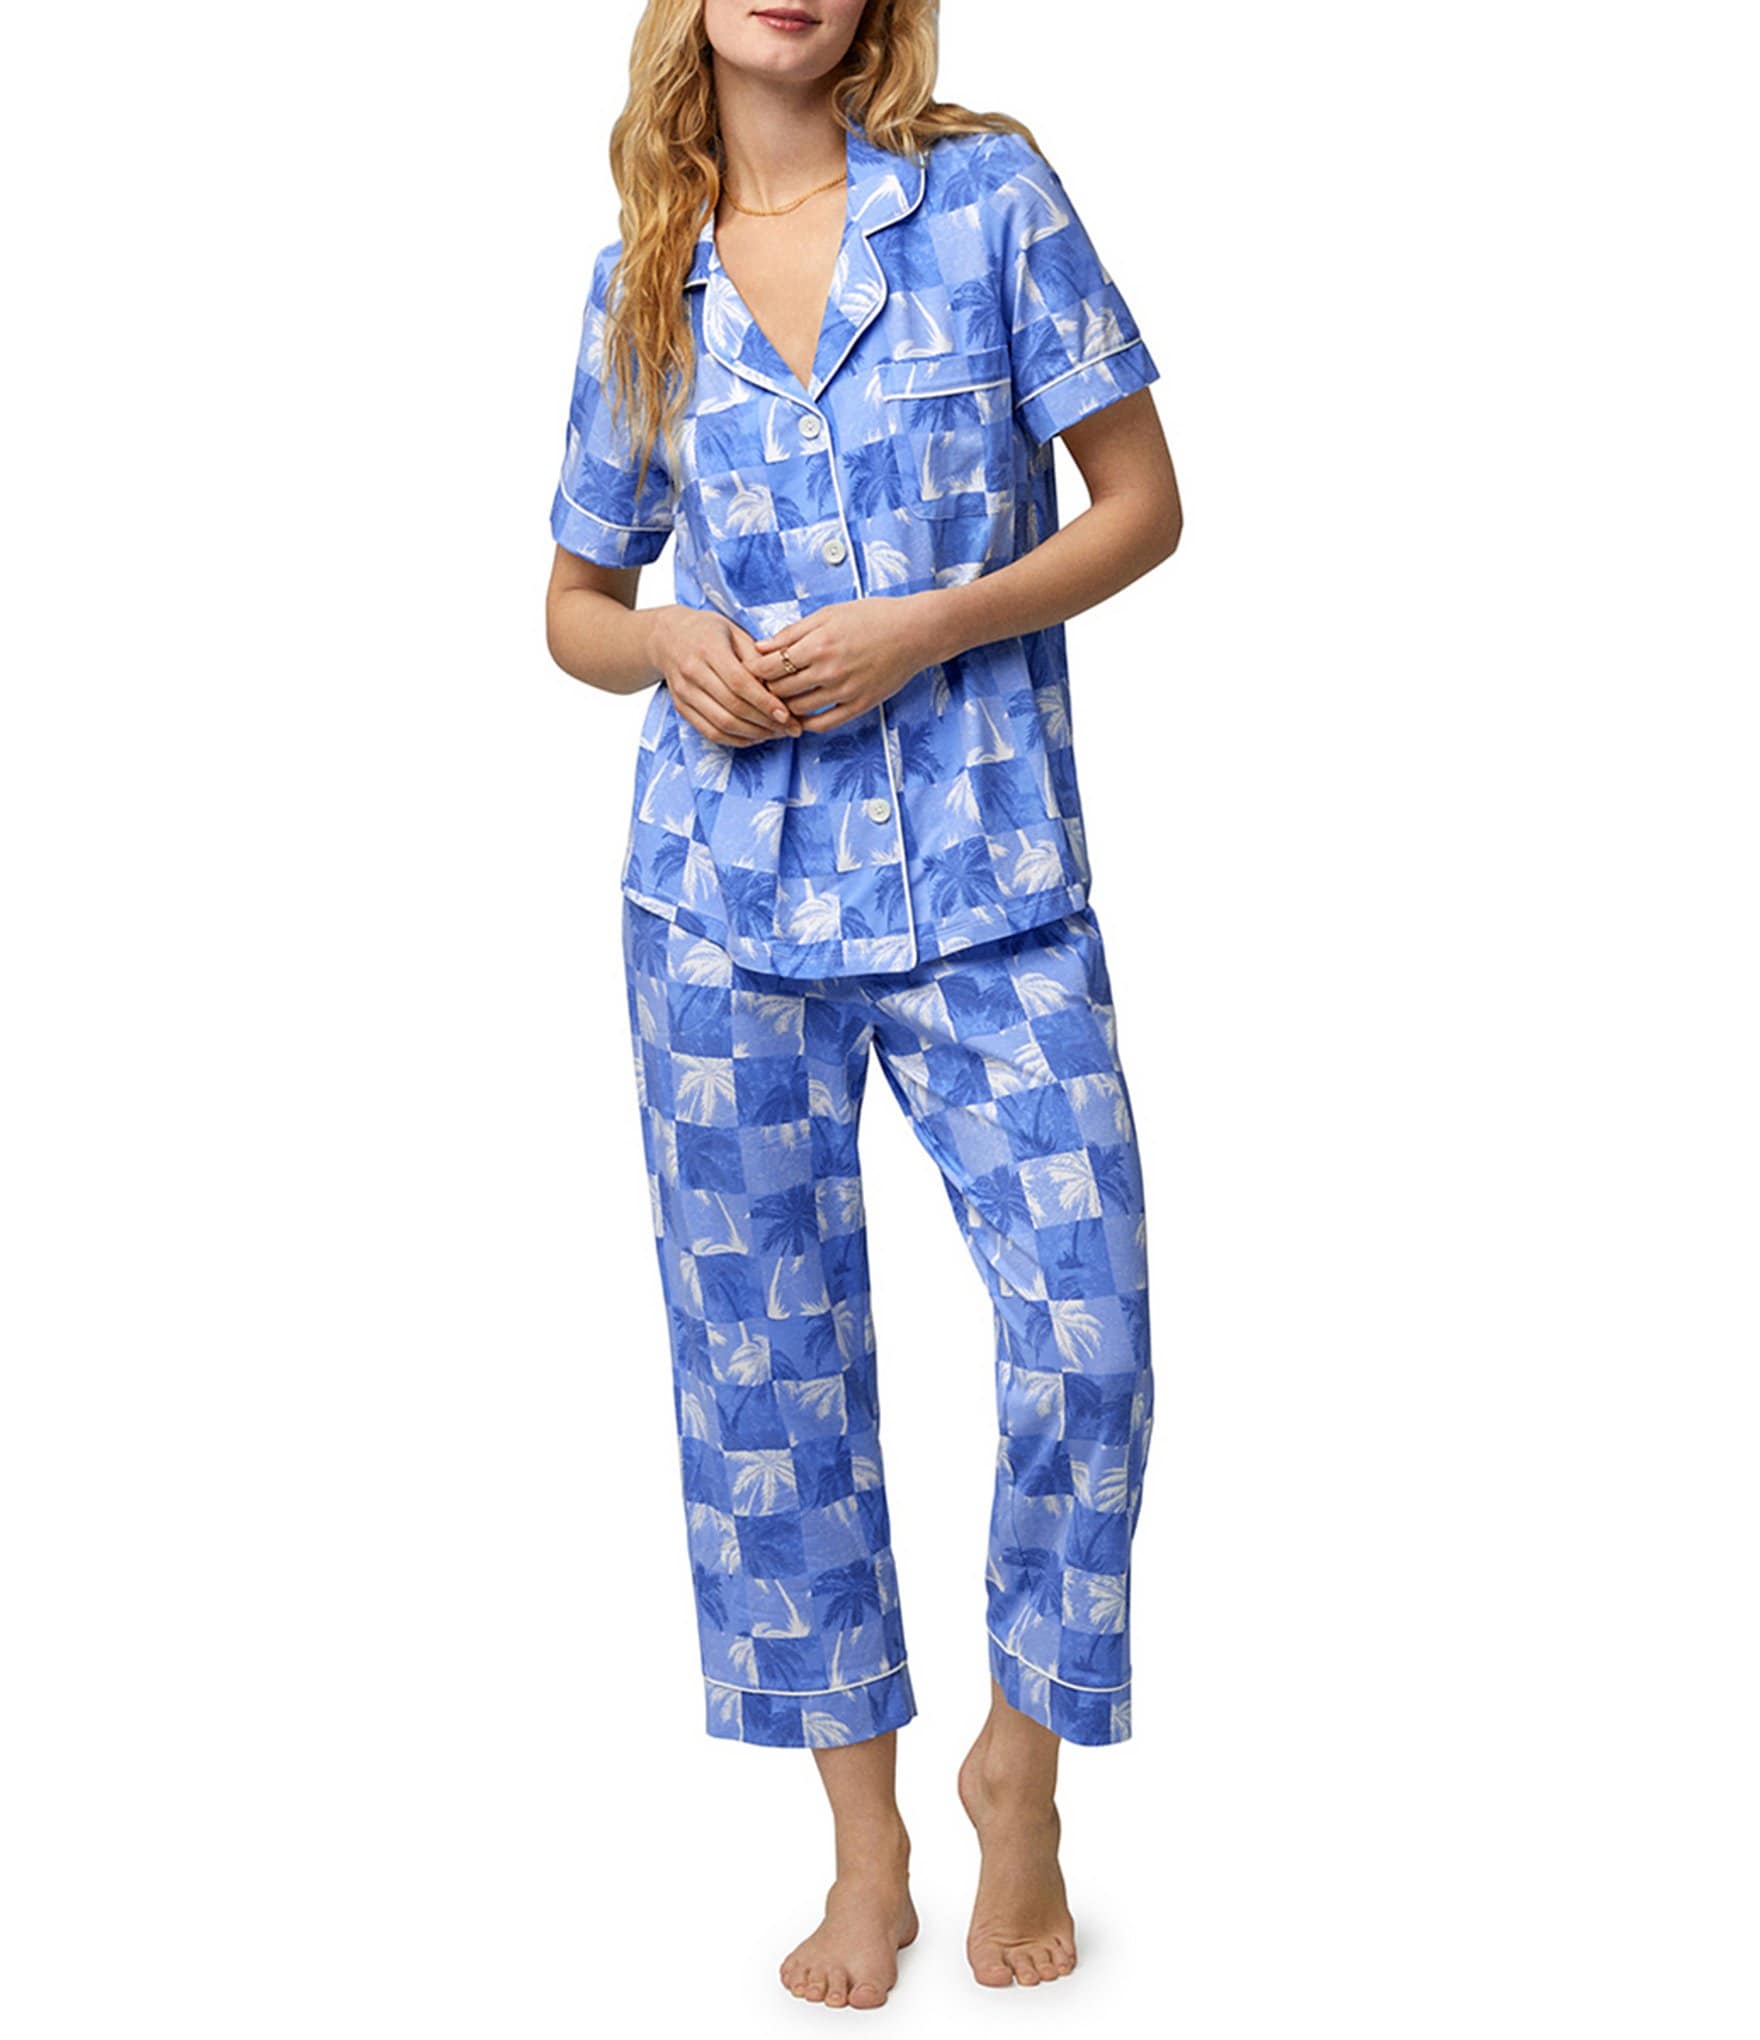 Blue Lingerie : Pajamas, Bras, & Panties